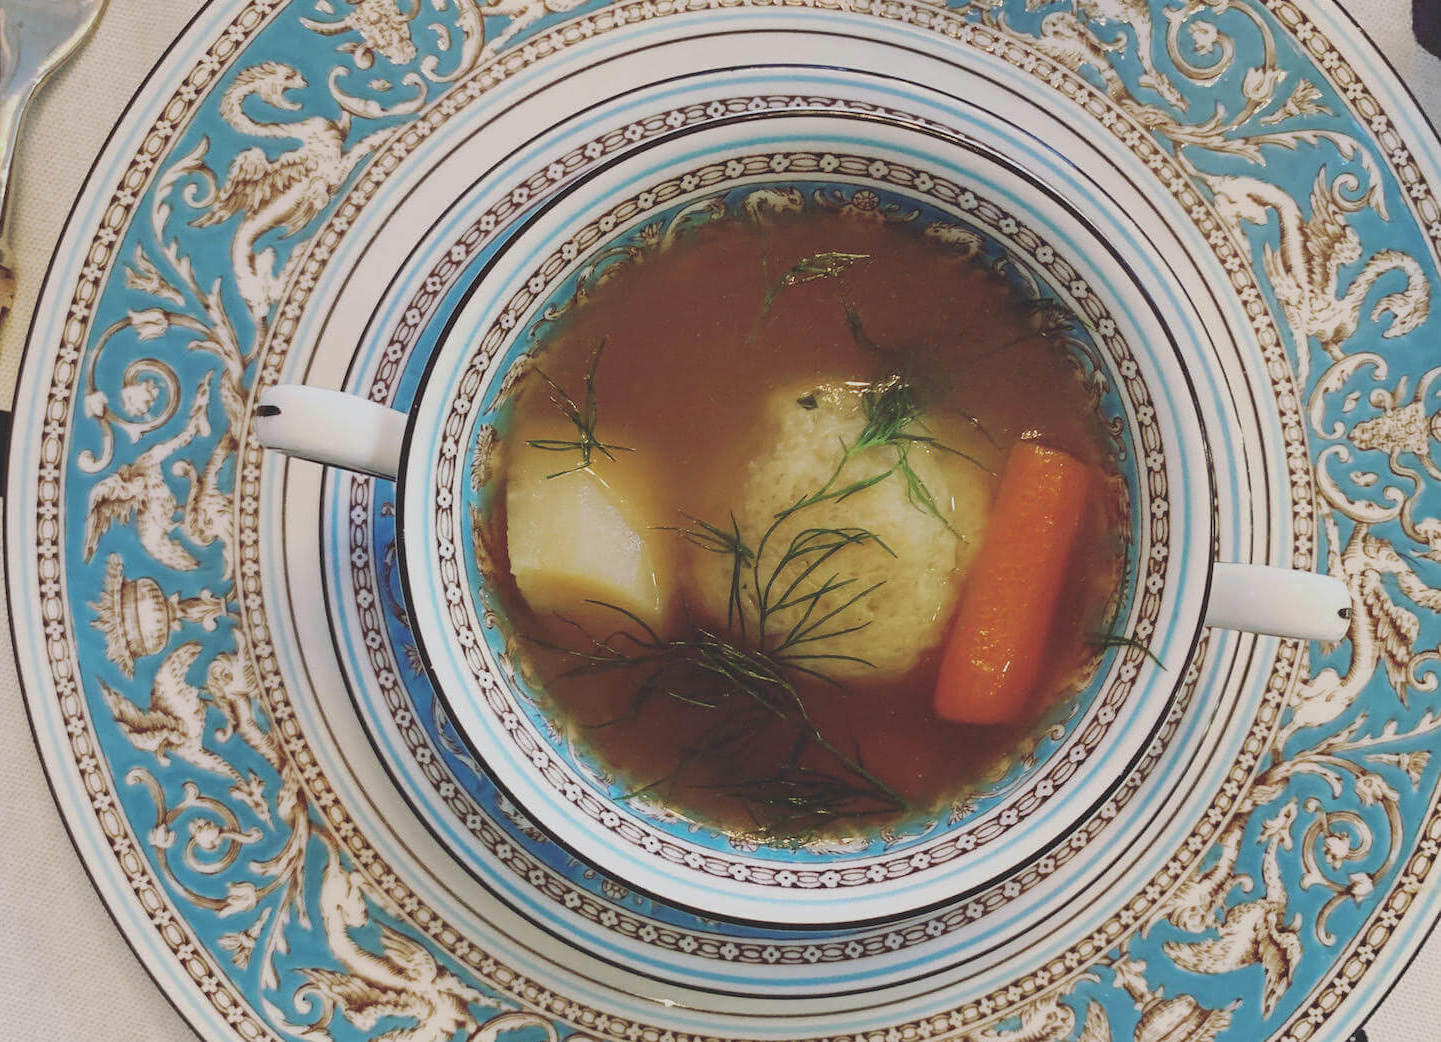 Bowl of matzoh ball soup. (June 2020)